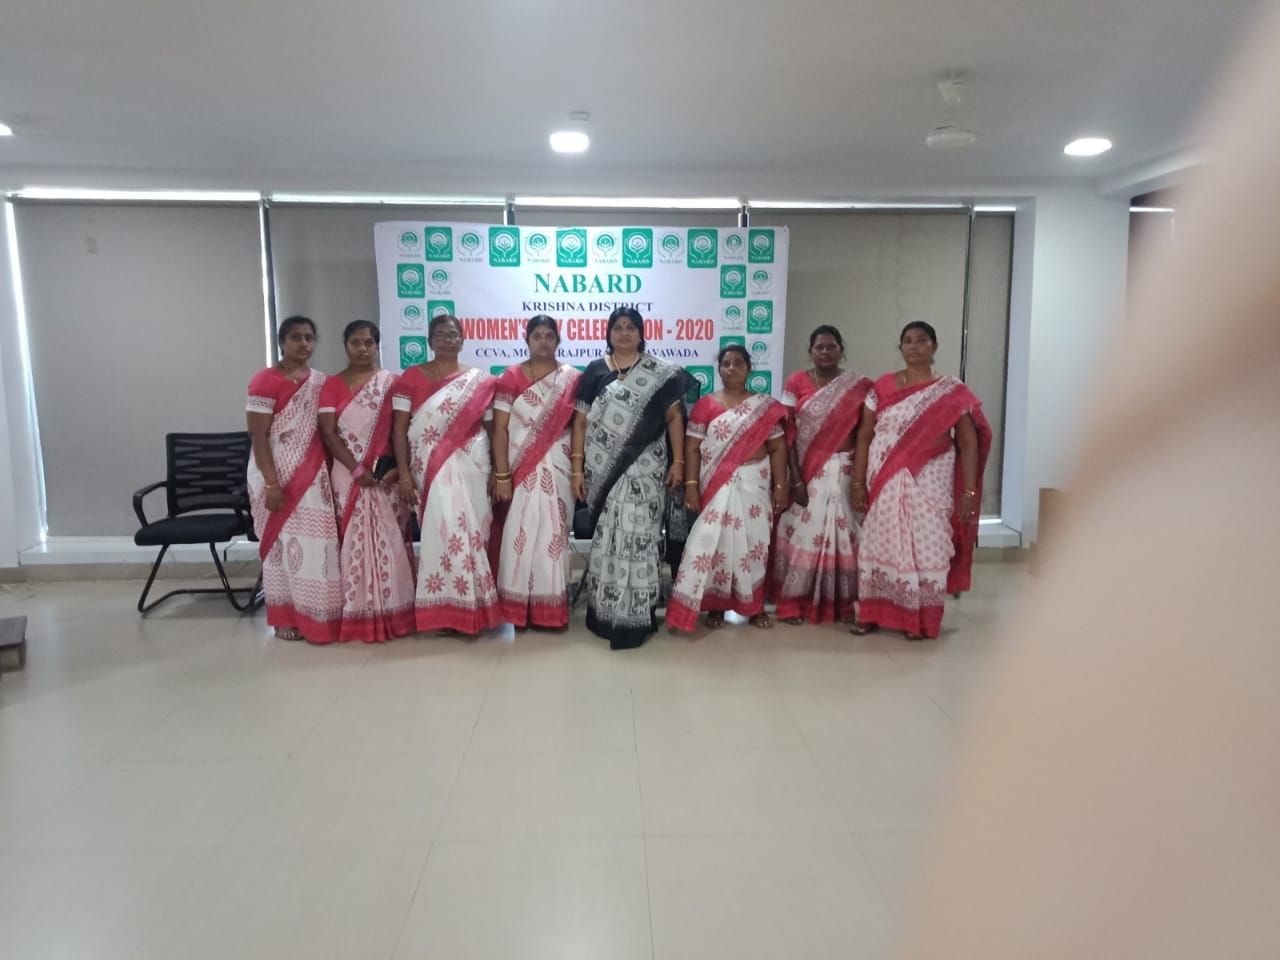 Janaki Devi with her team